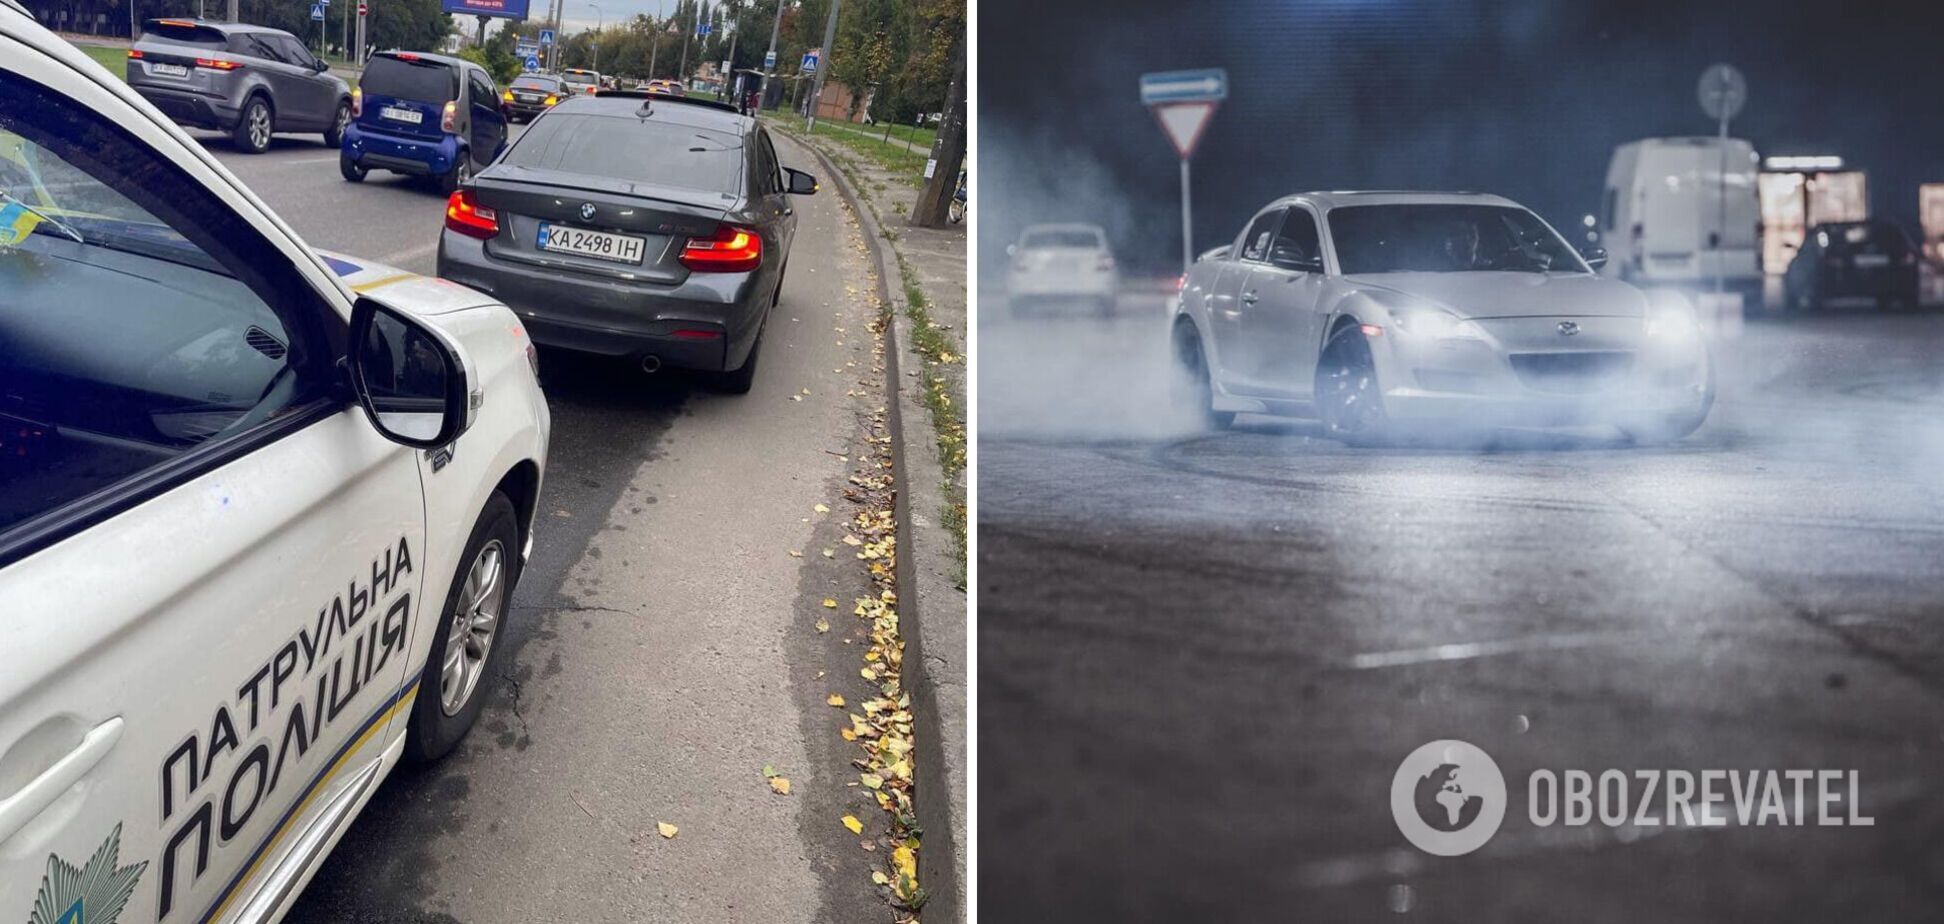 Білошицький показав, як поліцейські штрафують 'за форсаж' у столиці: у деяких авто по 9 порушень